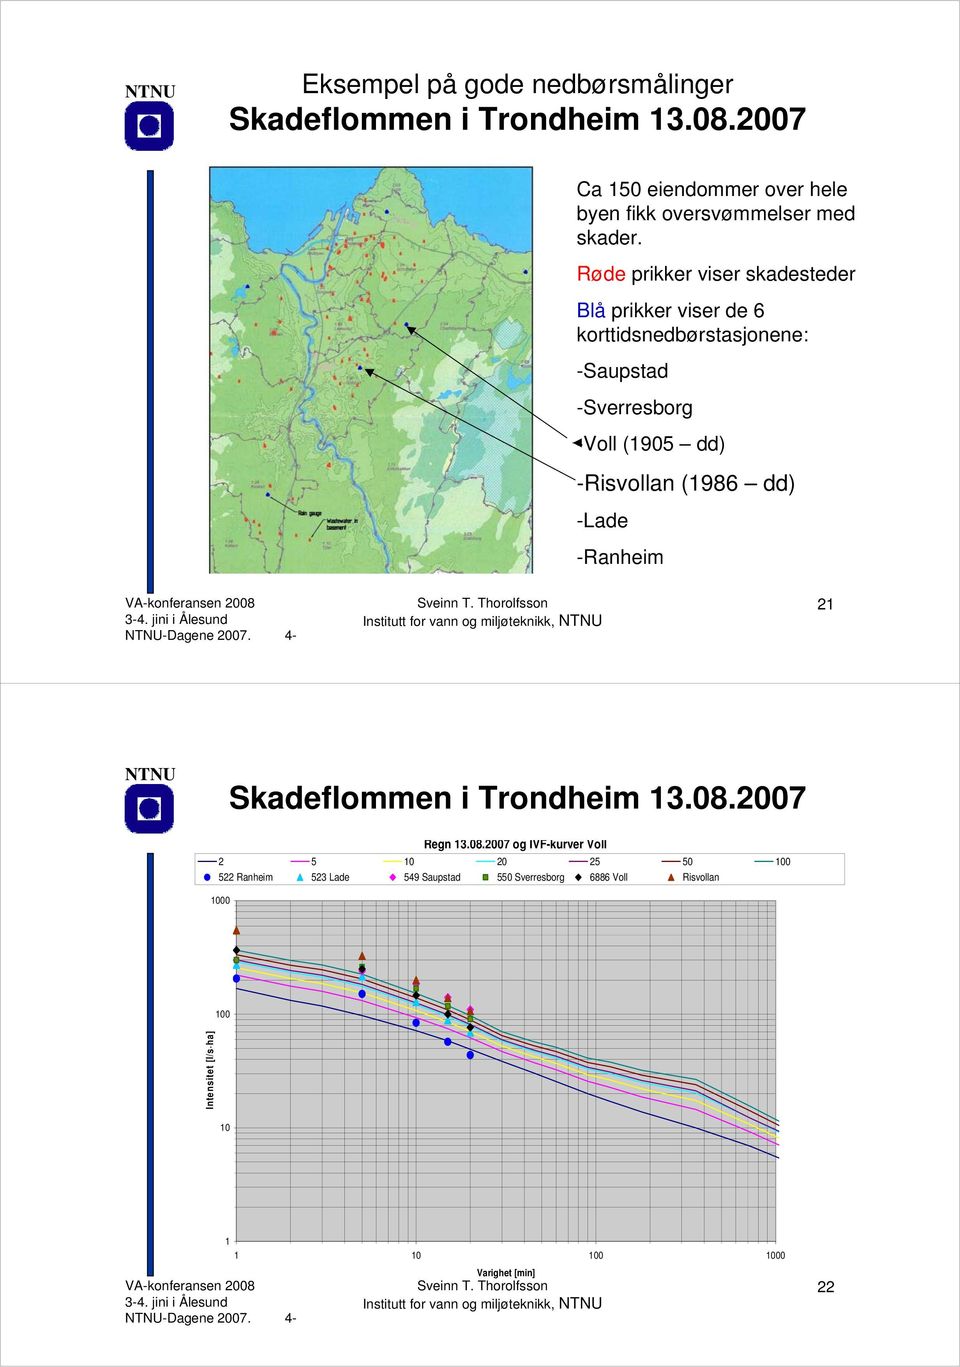 Røde prikker viser skadesteder Blå prikker viser de 6 korttidsnedbørstasjonene: -Saupstad -Sverresborg -Voll (1905 dd) -Risvollan